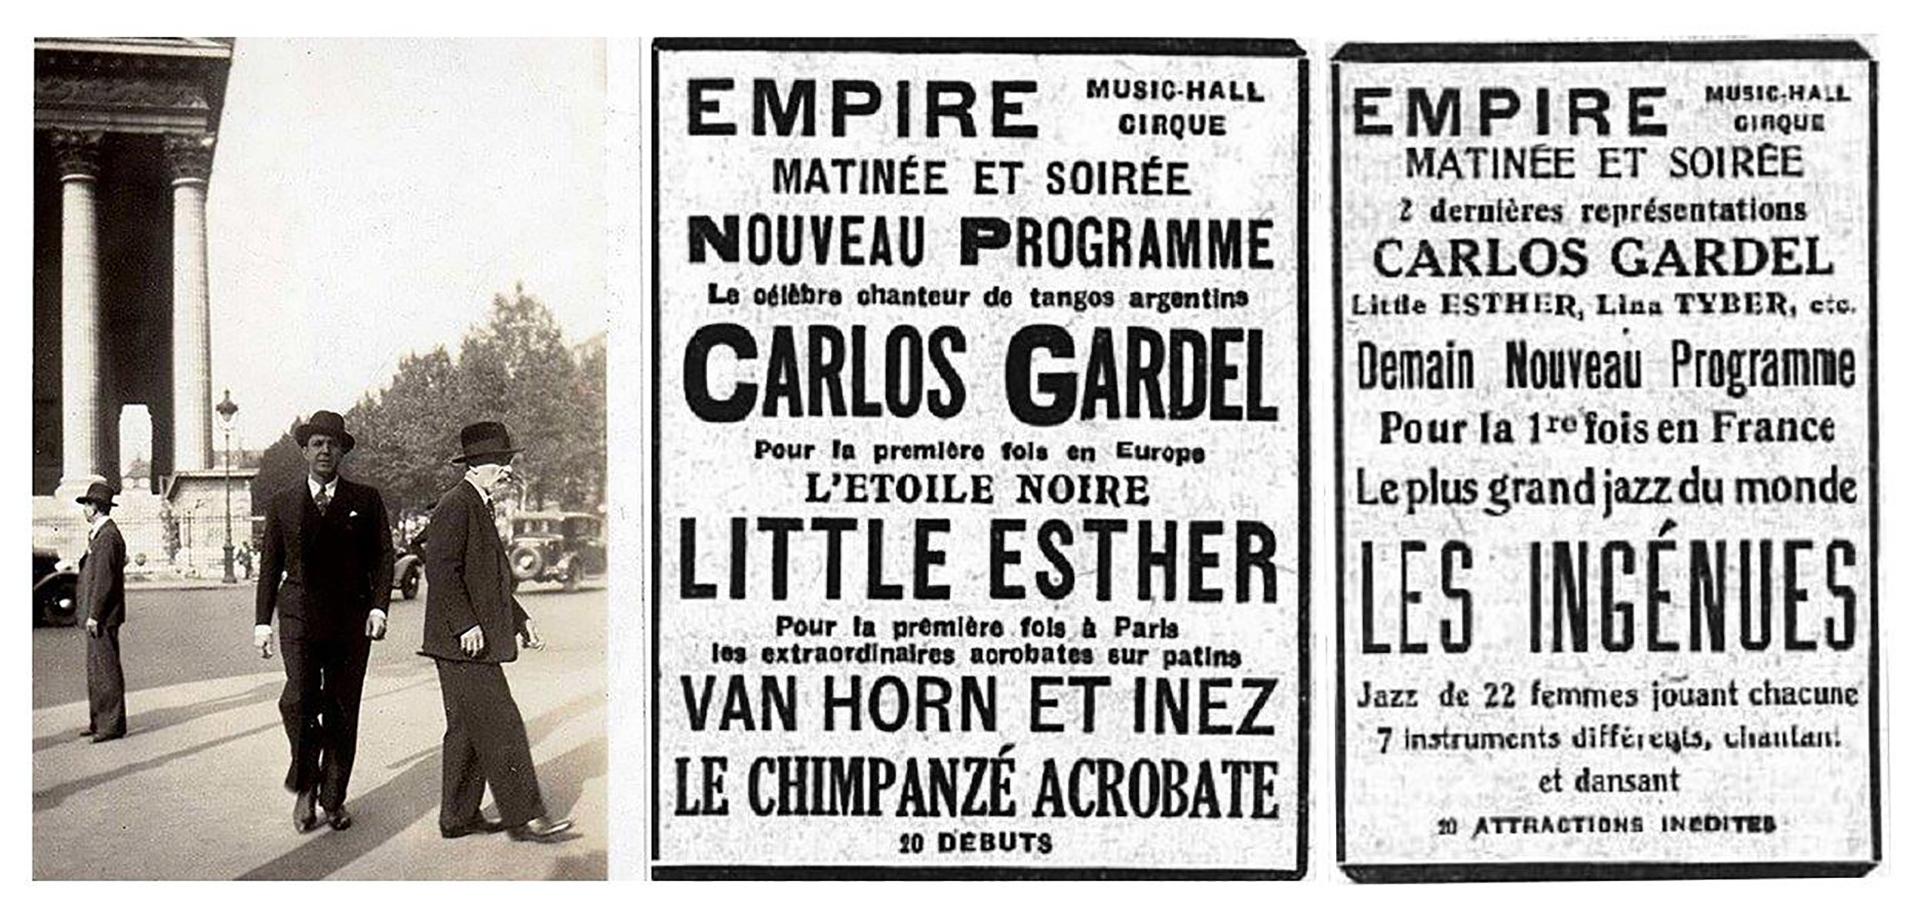 Foto de Gardel en París, cruzando la Rue Royal. Anuncios de la presentación en el Empire del célebre cantor argentino Carlos Gardel. (Archivo Walter Santoro)